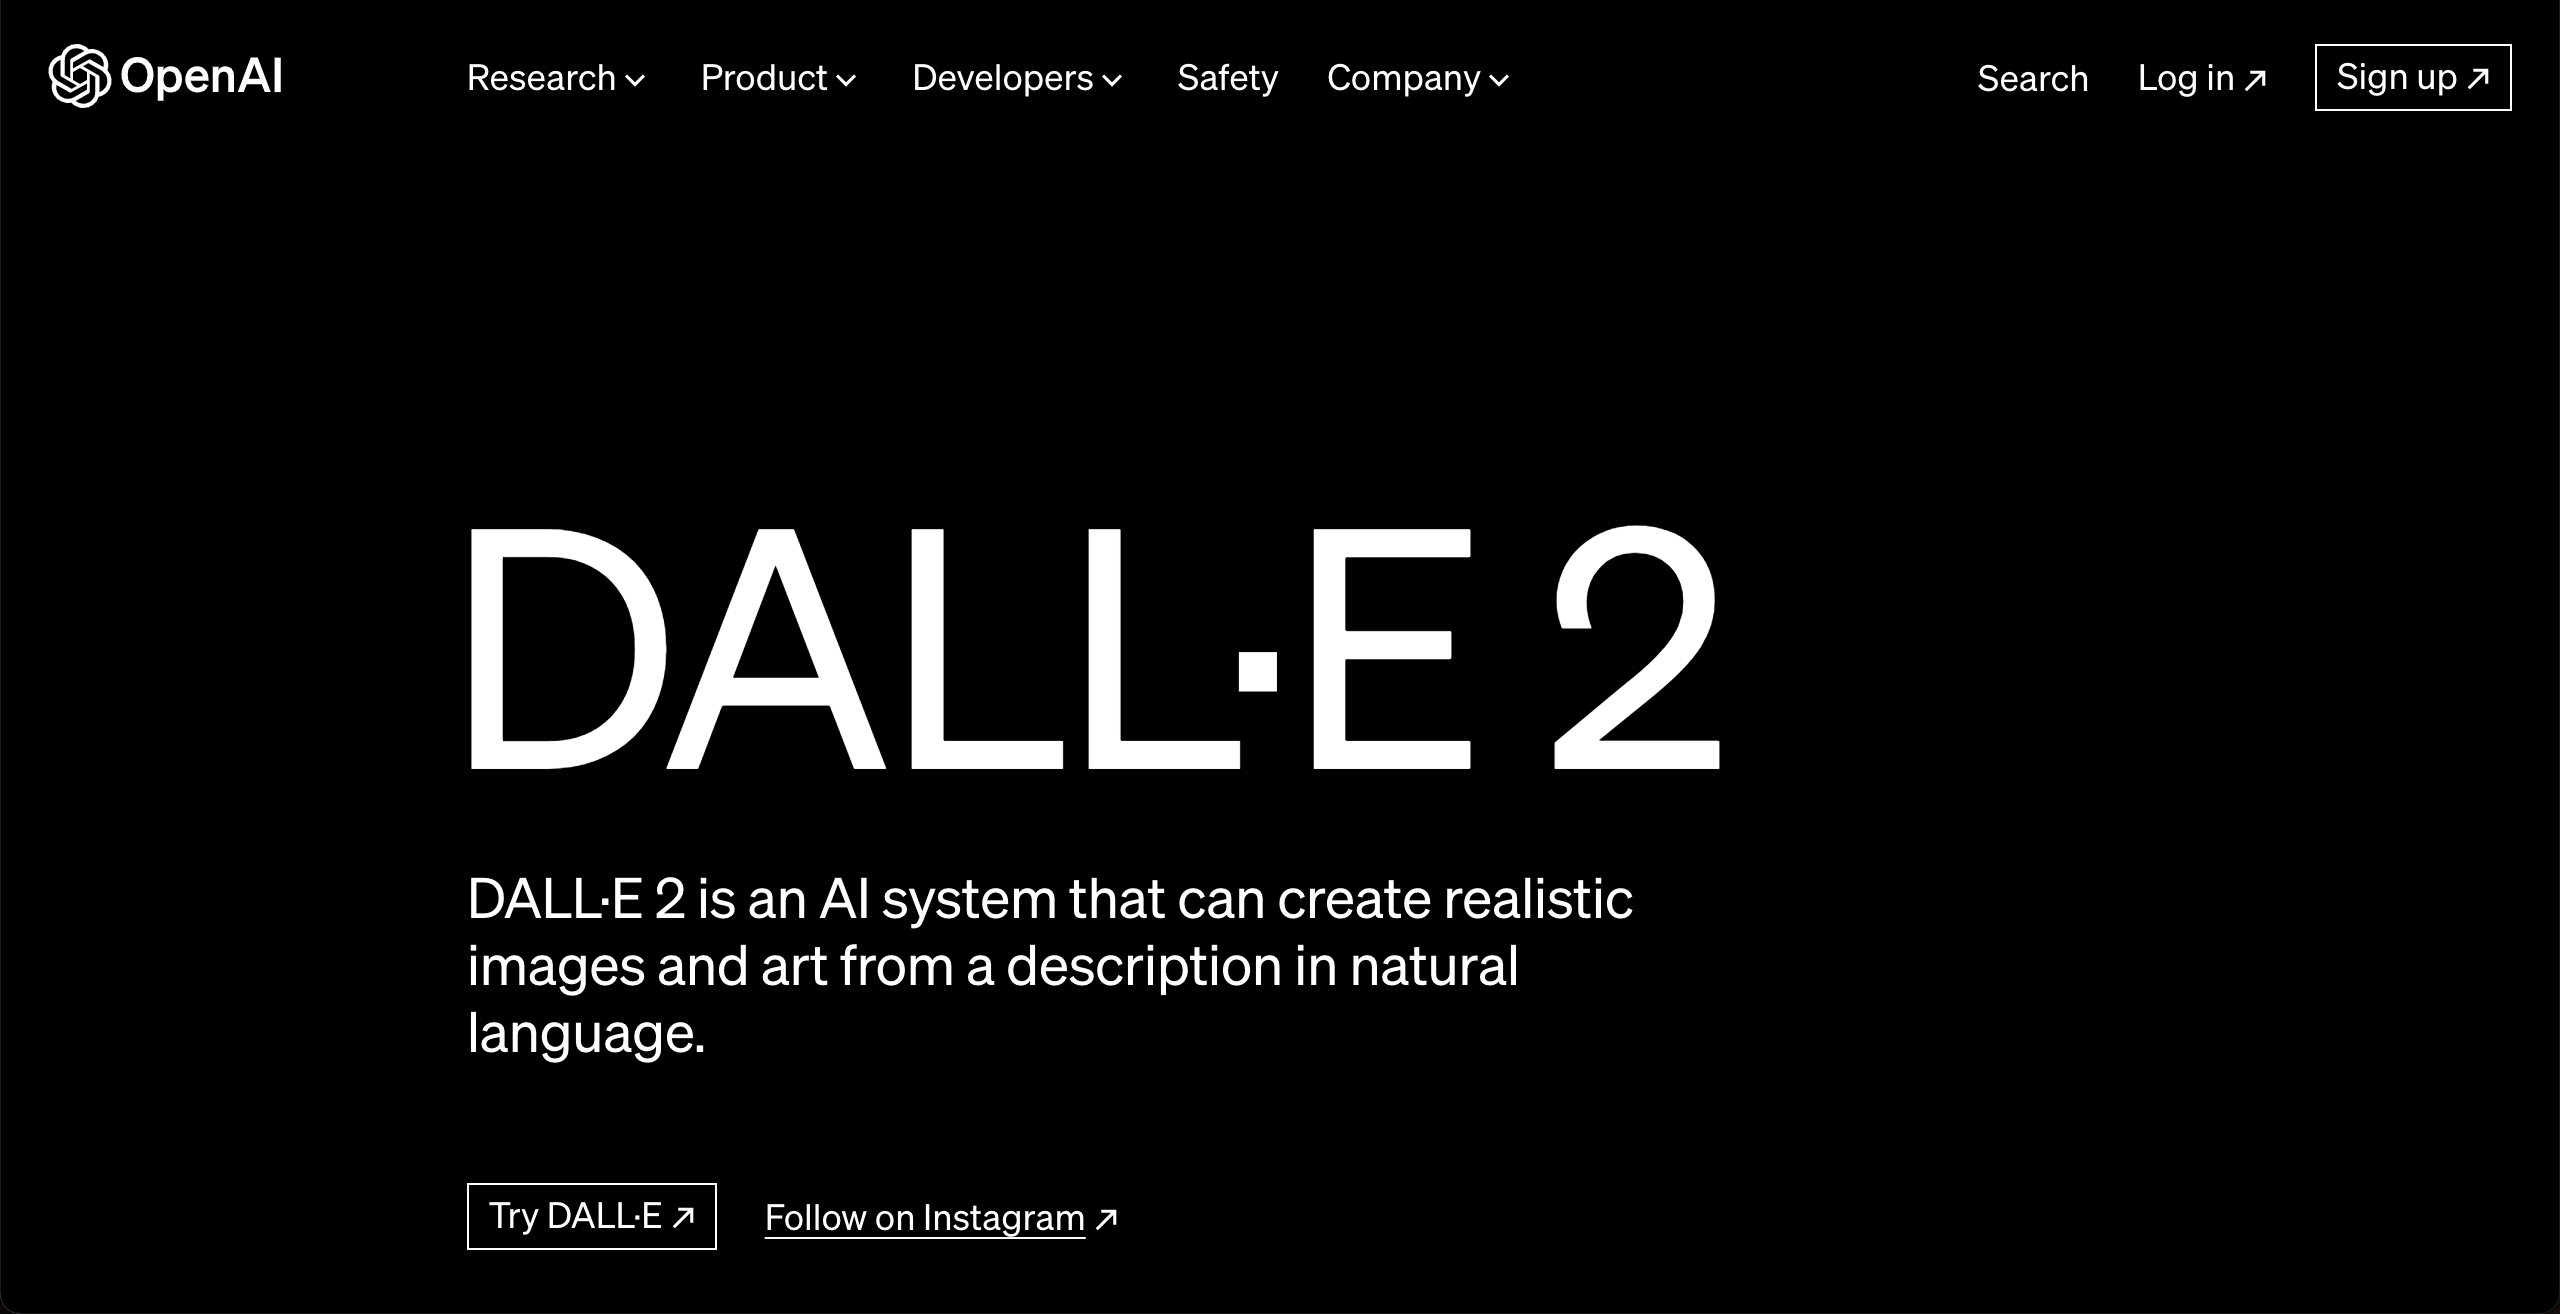 Captura de tela: Página inicial do site do DALL-E elegante e elementos visuais atrativos.